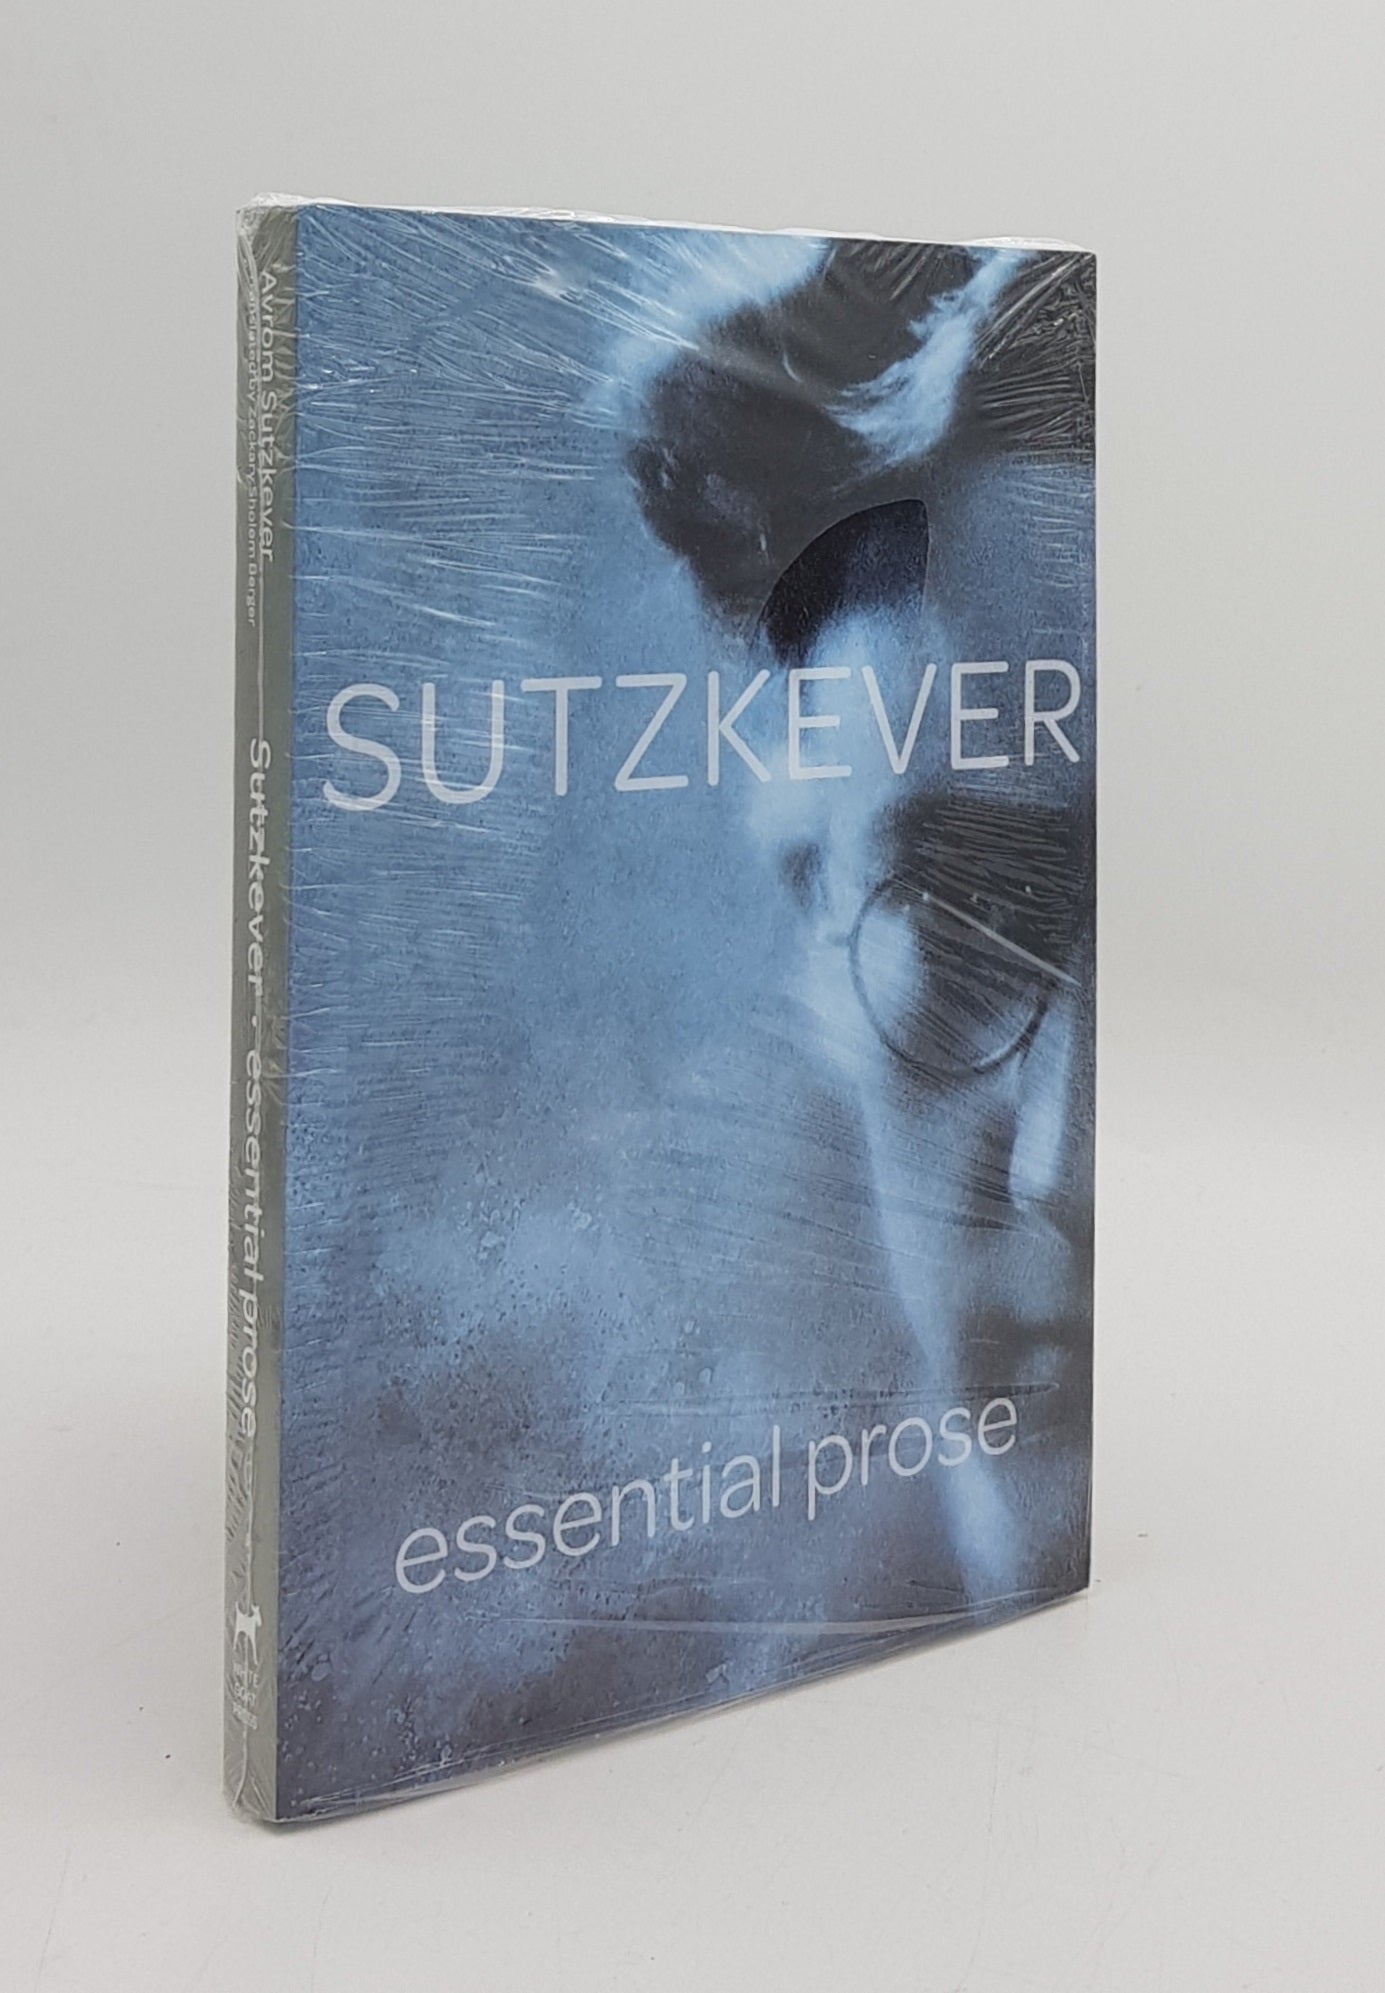 SUTZKEVER Avrom - Sutzkever Essential Prose